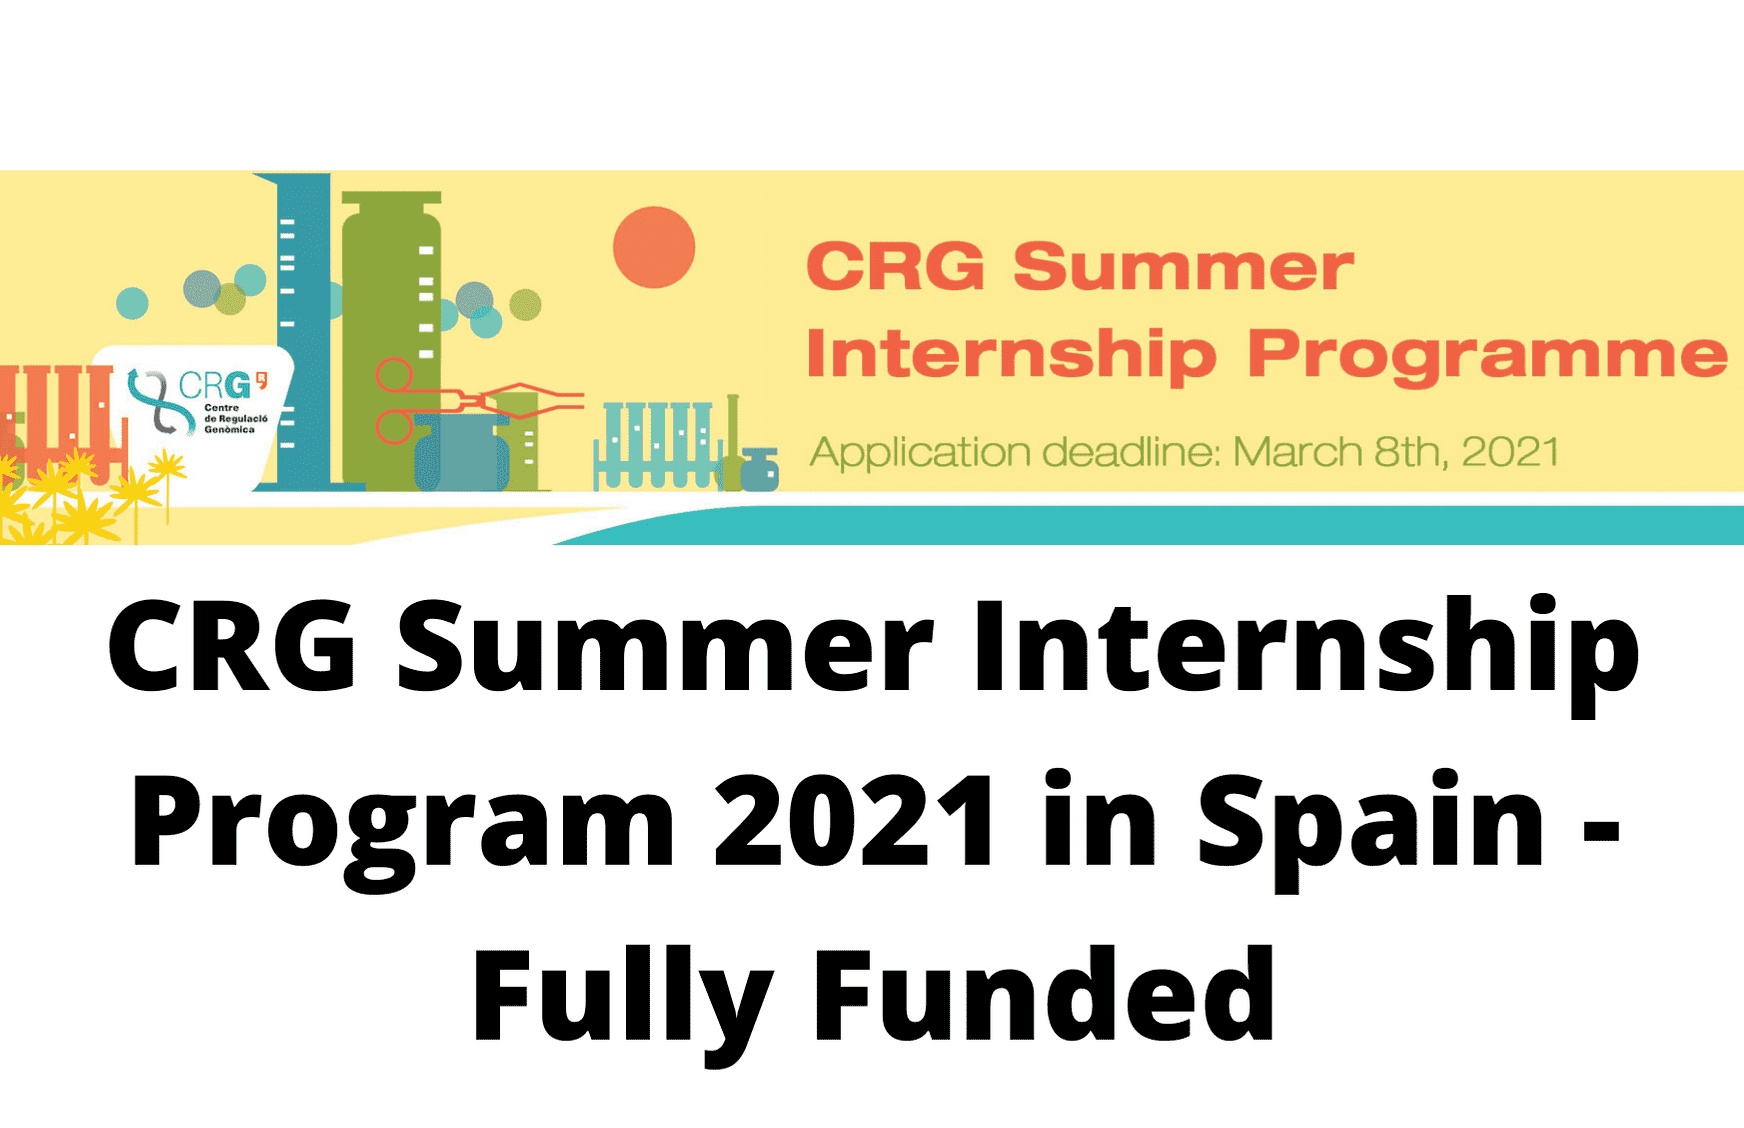 برنامج التدريب الصيفي CRG الممول بالكامل لطلاب البكالوريوس والماجستير في إسبانيا 2021